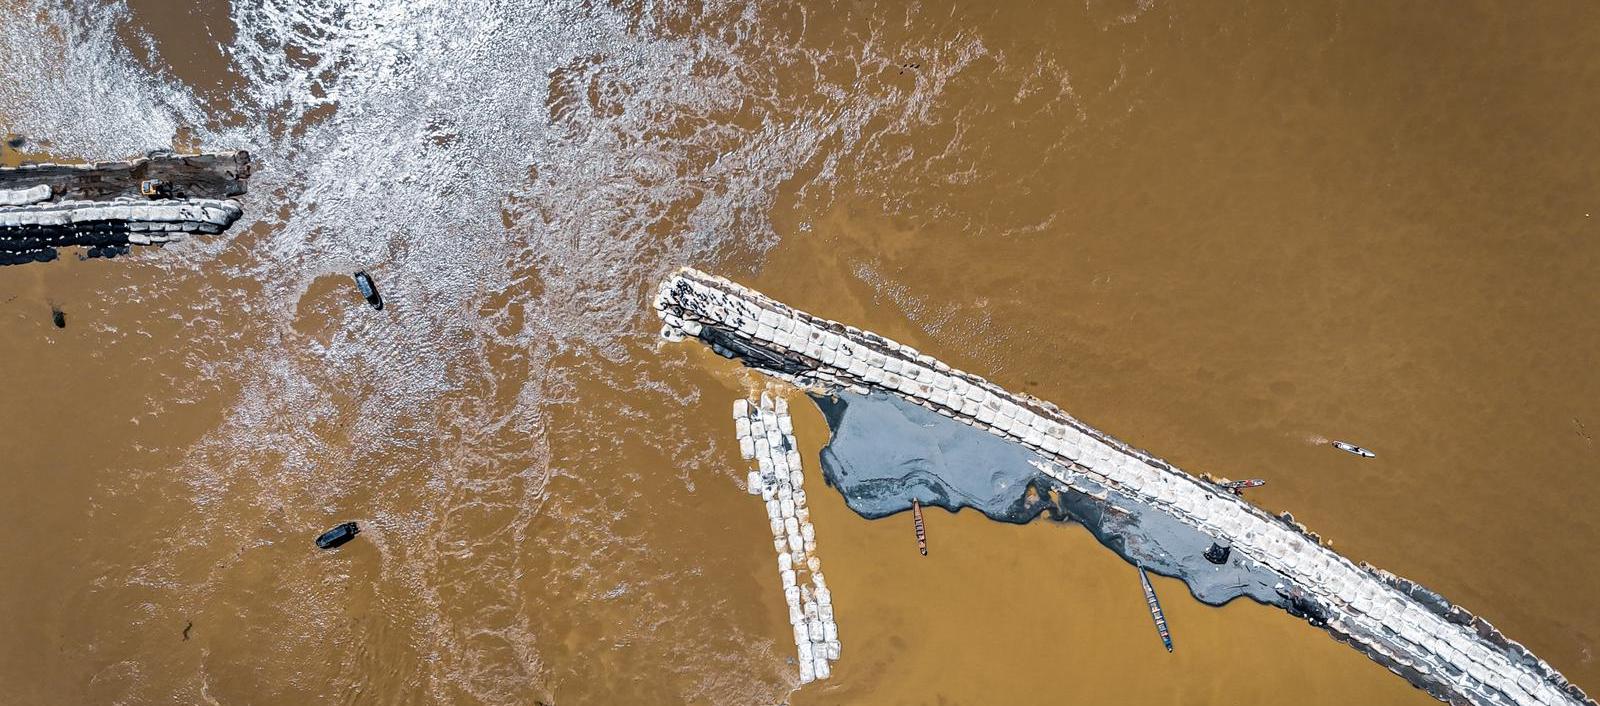 Fotografía aérea del desbordamiento del río Cauca en 'Caregato'.